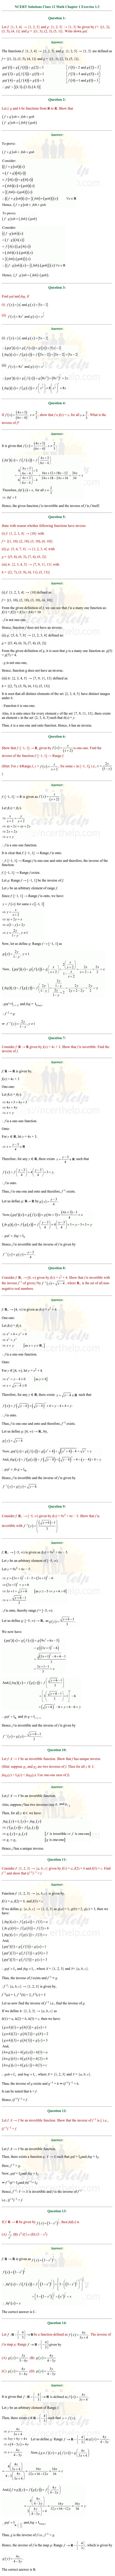 ex.1.3 Class 12 Math Chapter 1 ncert solutions